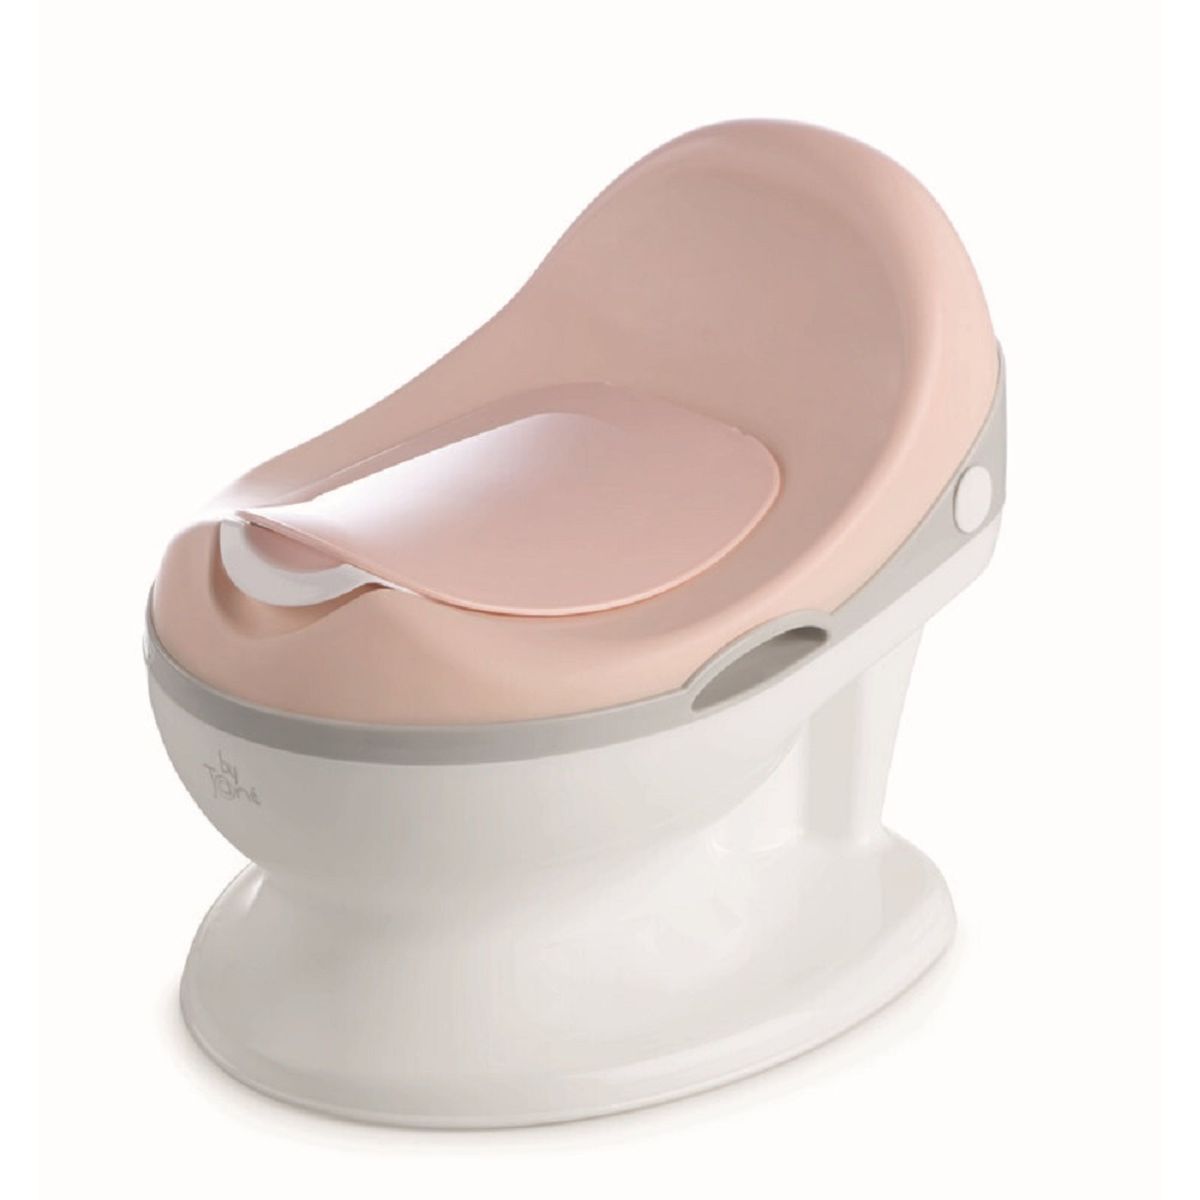 Pot de toilette pour bébé avec couvercle et poignée de transport